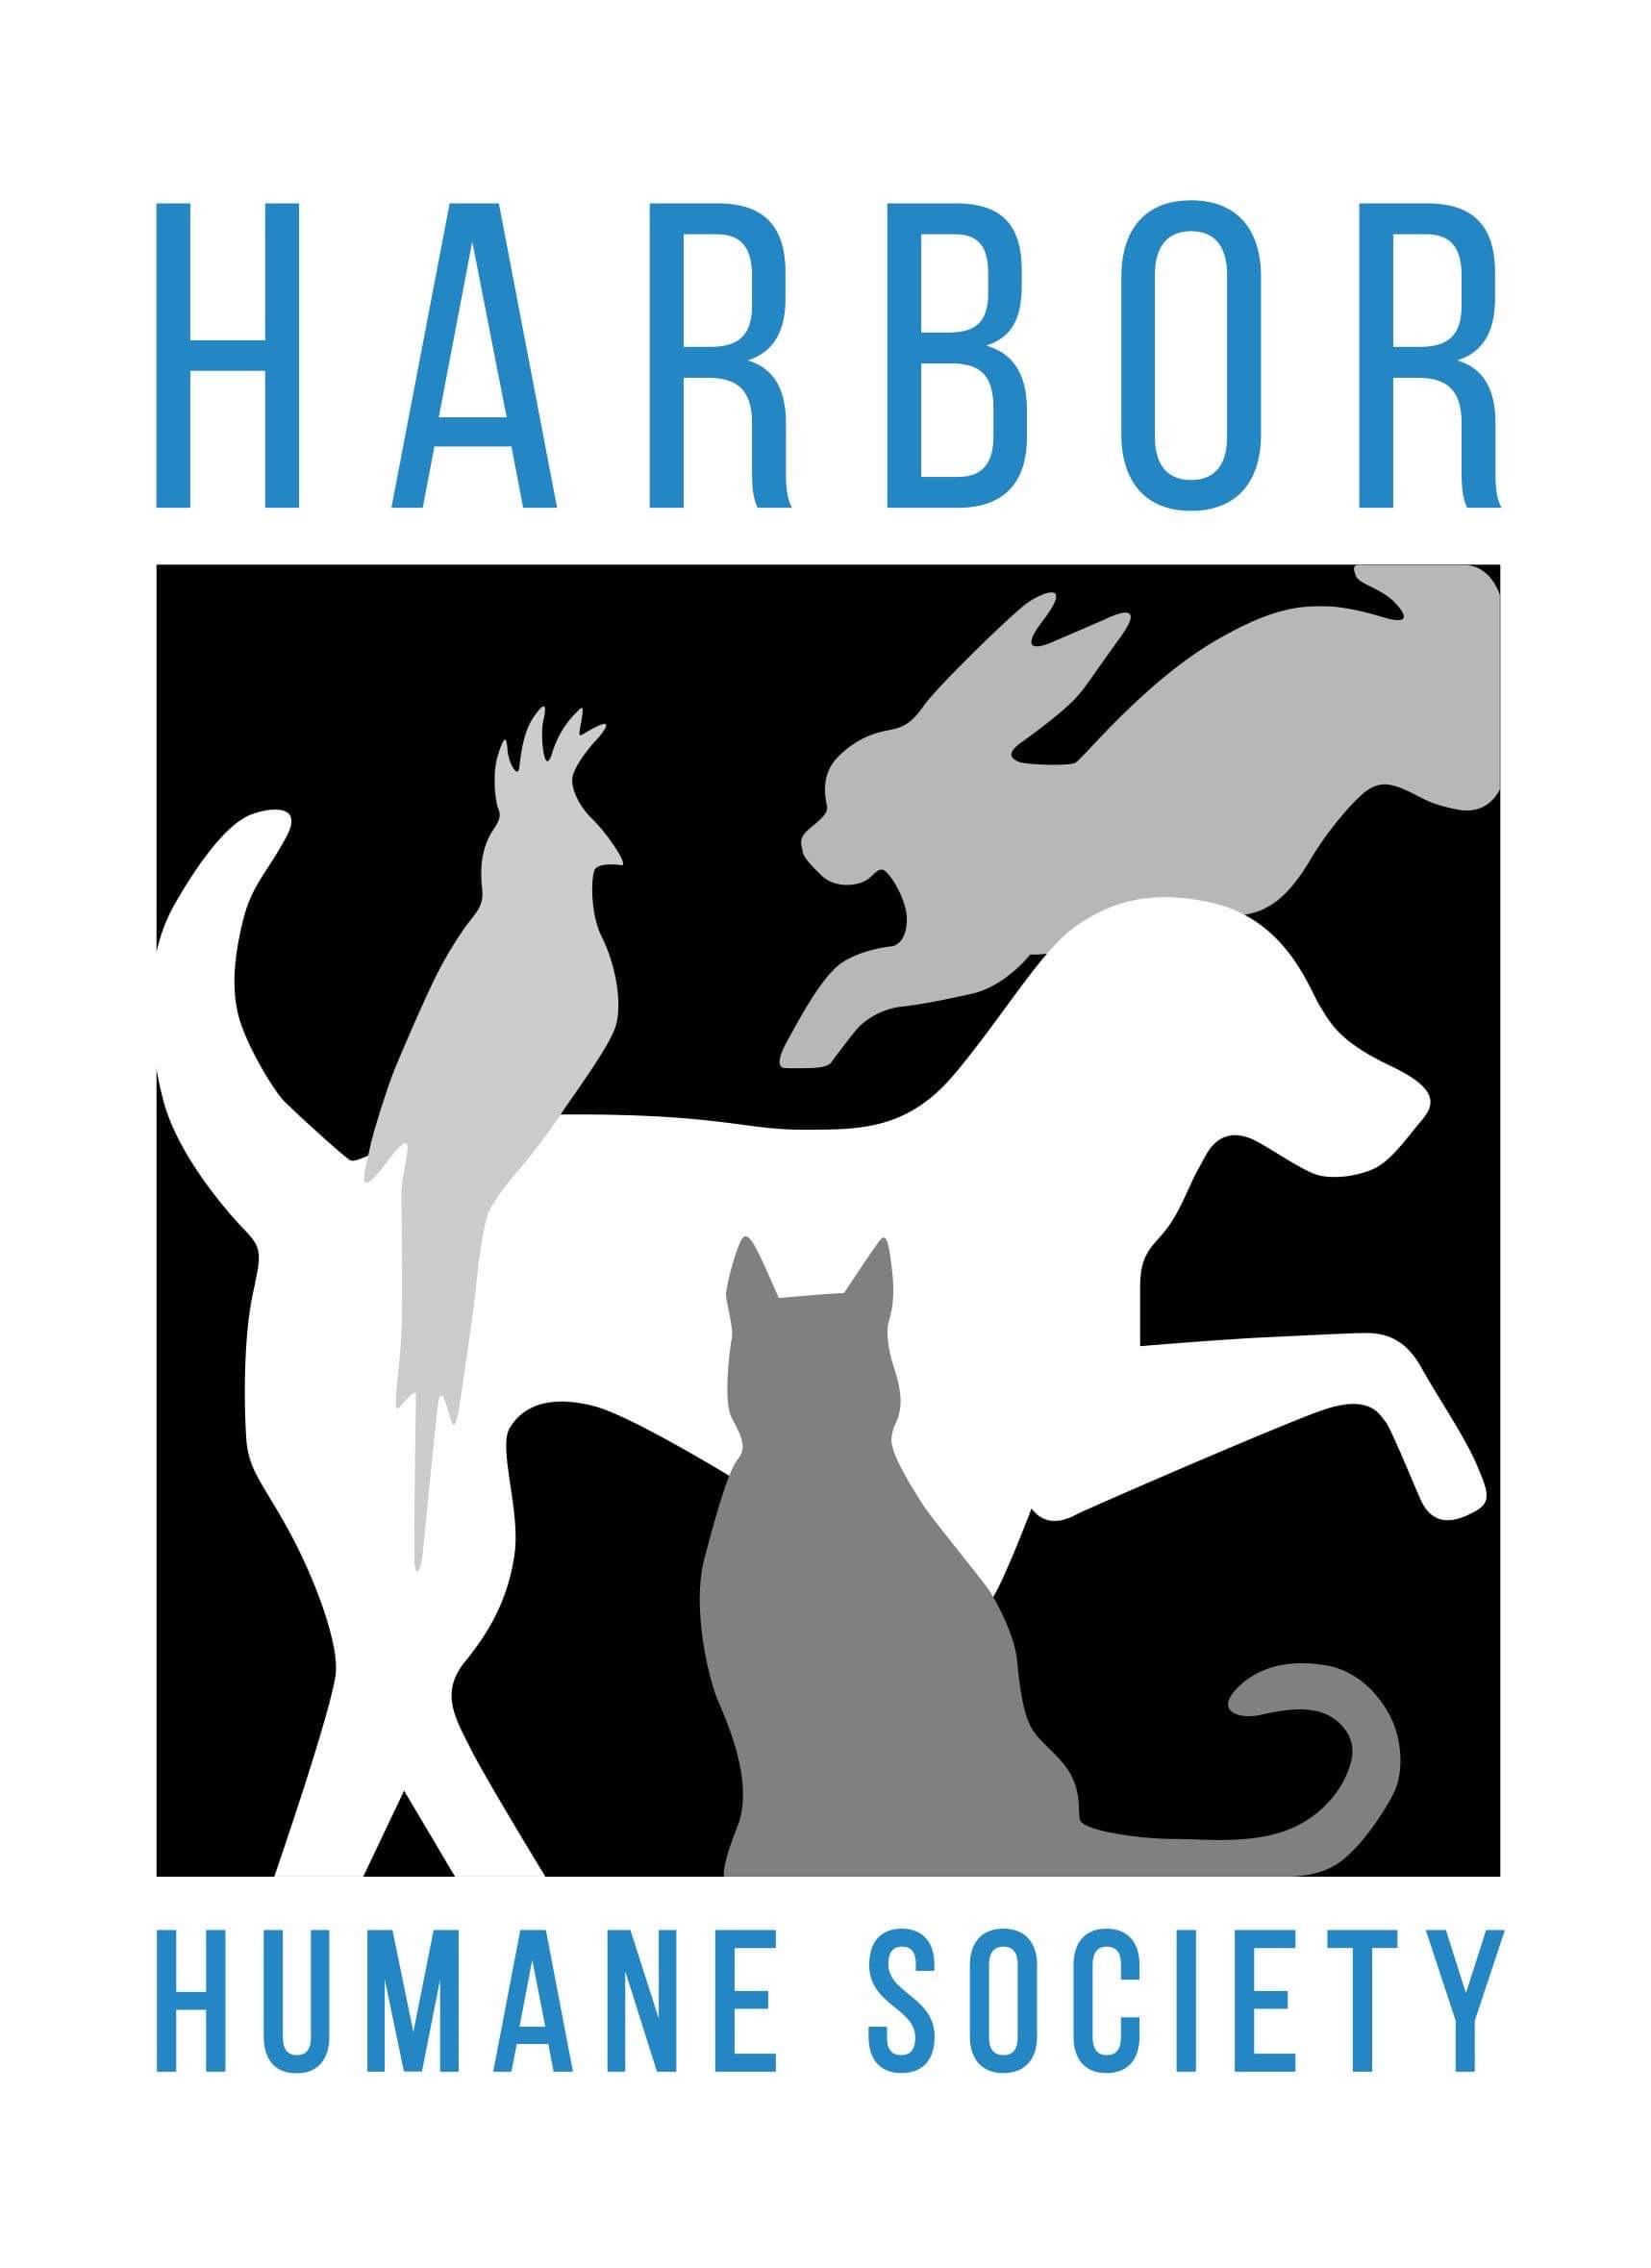 Harbor Humane Society